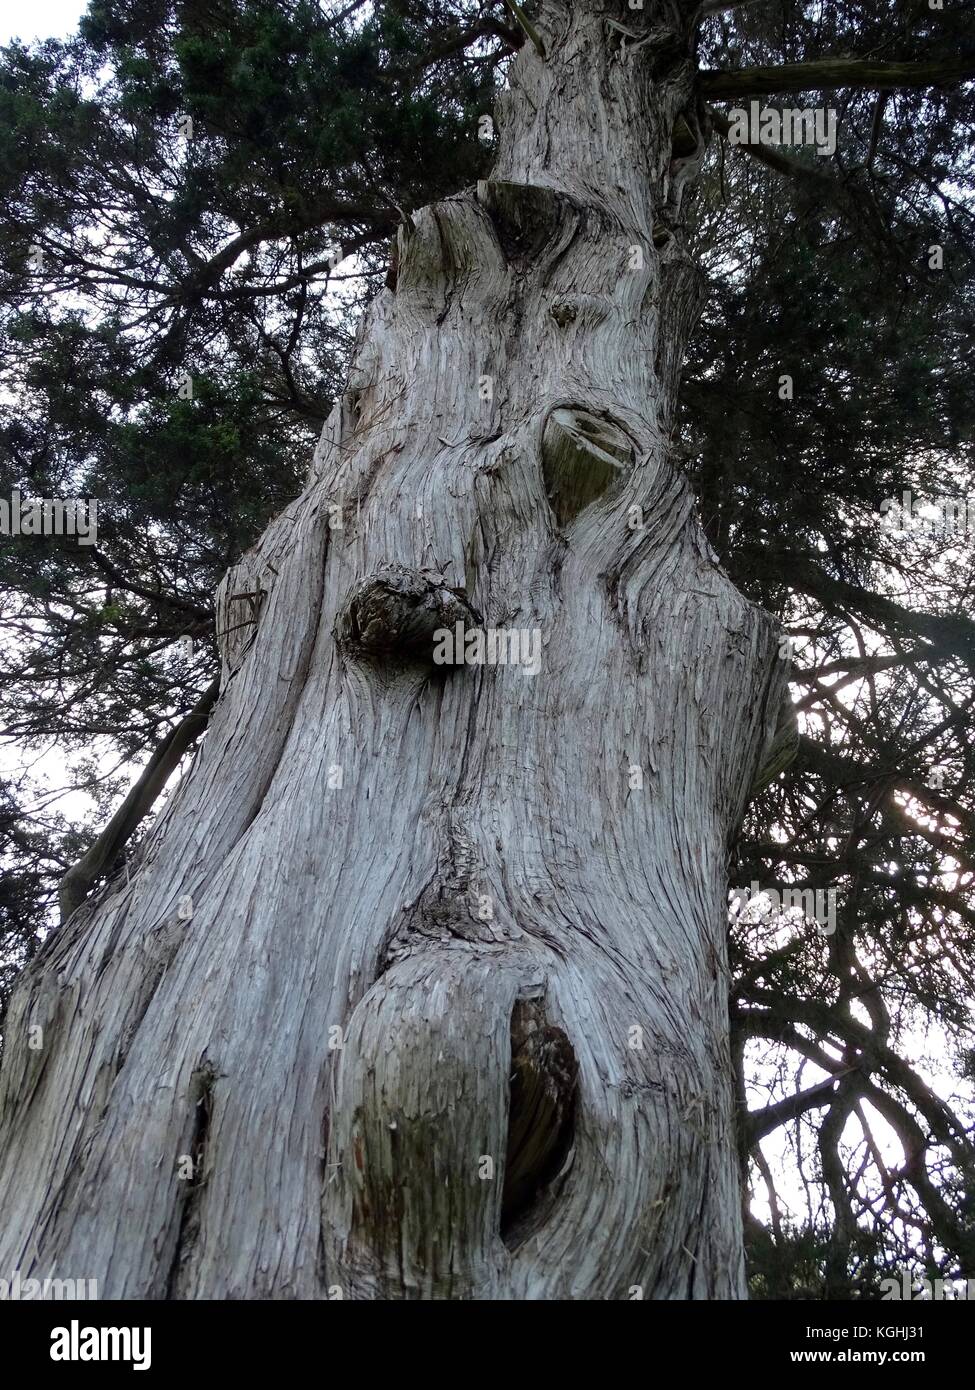 Interessante Knoten und Maserknollen in der Nähe zu sehen, der ein sehr alter Baum in einem Friedhof Stockfoto